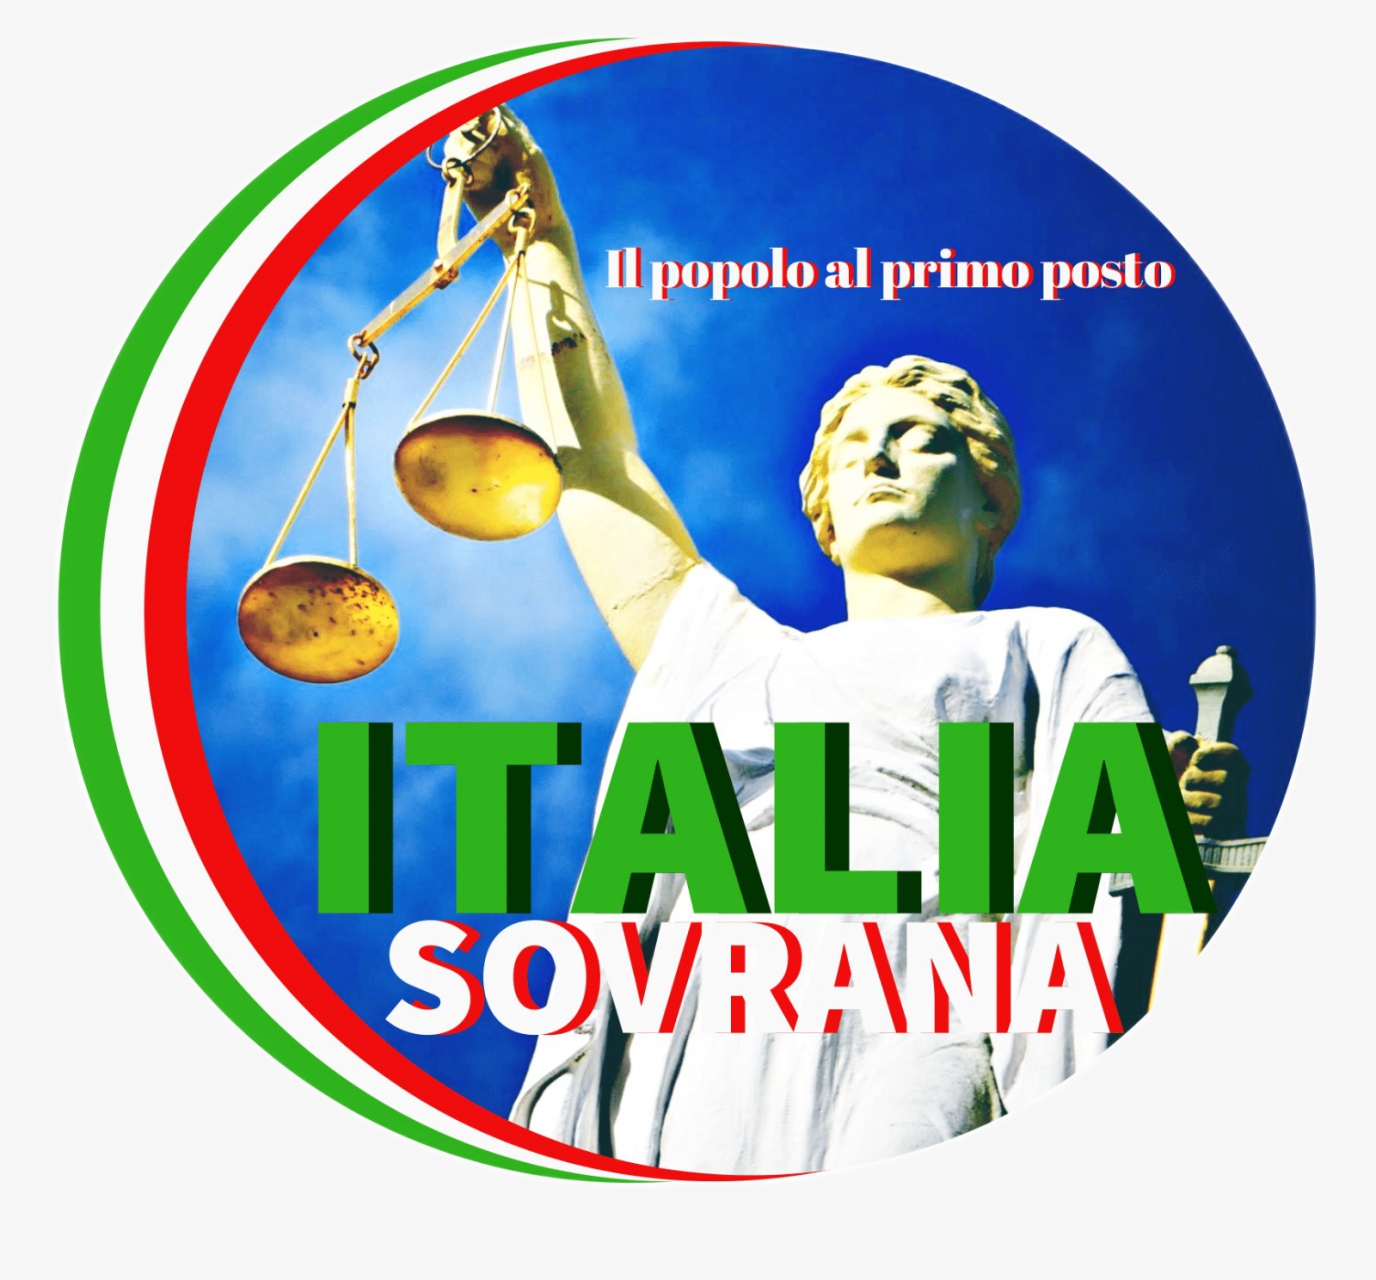 Protocollo di collaborazione tra S.O.S La Romania- Italia Sovrana, il popolo al primo posto.